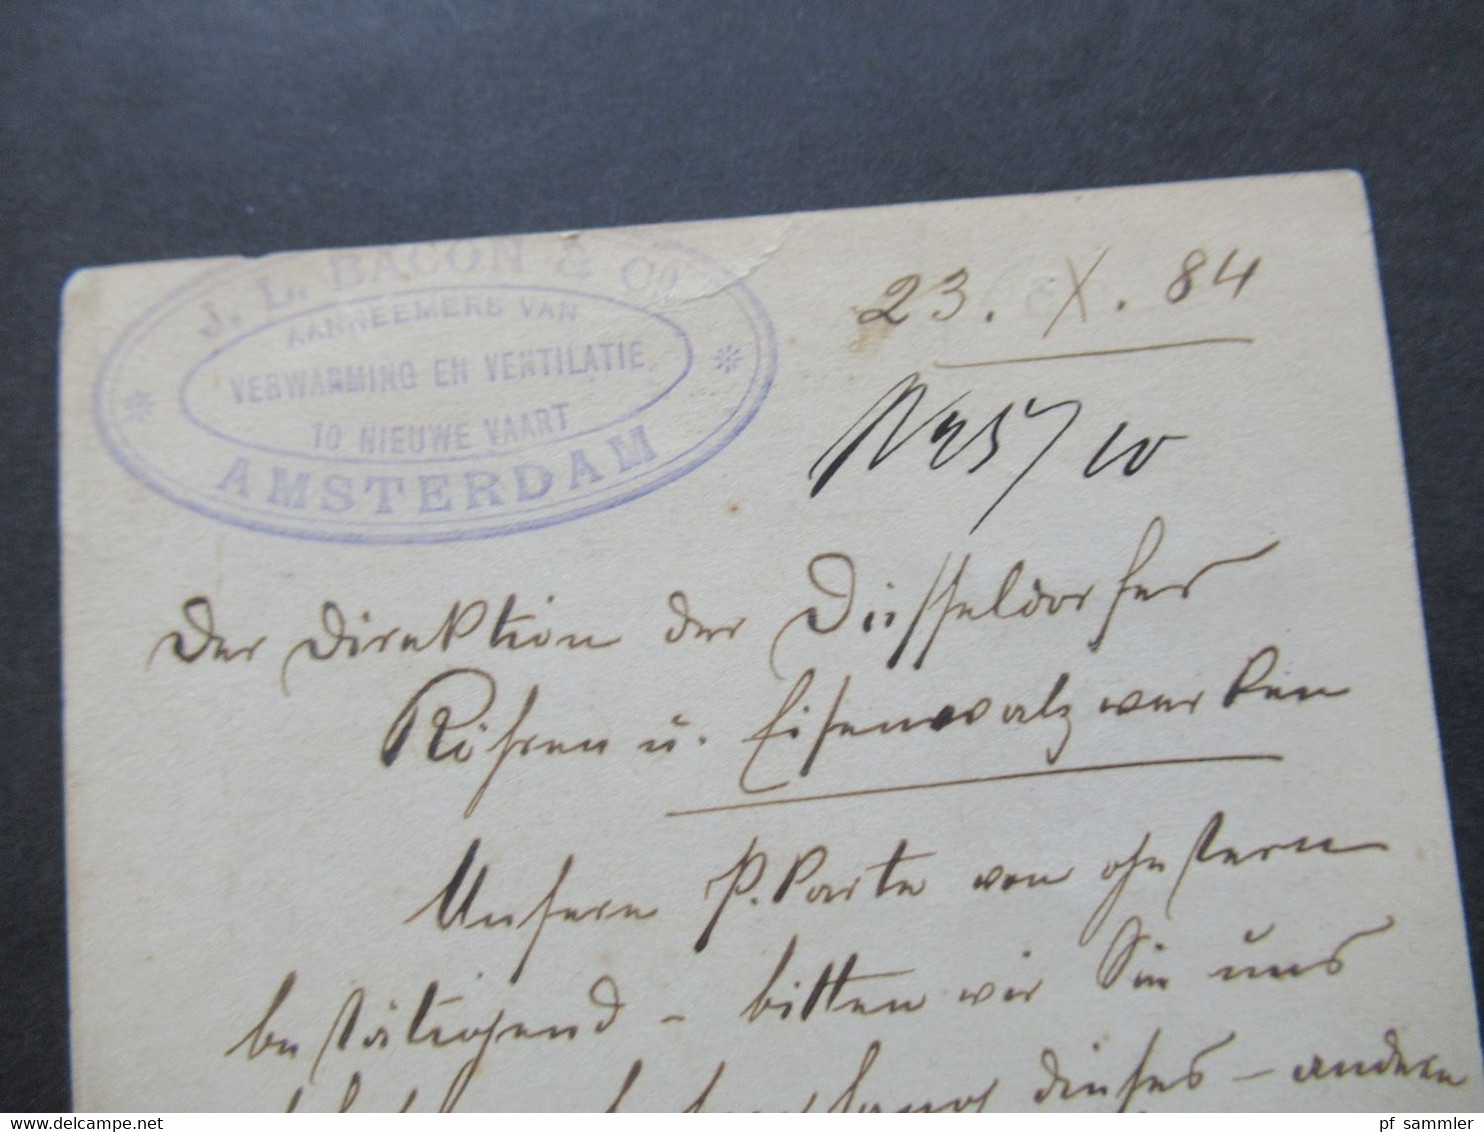 Niederlande 1884 Ganzsache Mit Zusatzfrankatur Auslands PK Amsterdam Nach Düsseldorf Oberbilk Mit Ank. Stempel - Briefe U. Dokumente